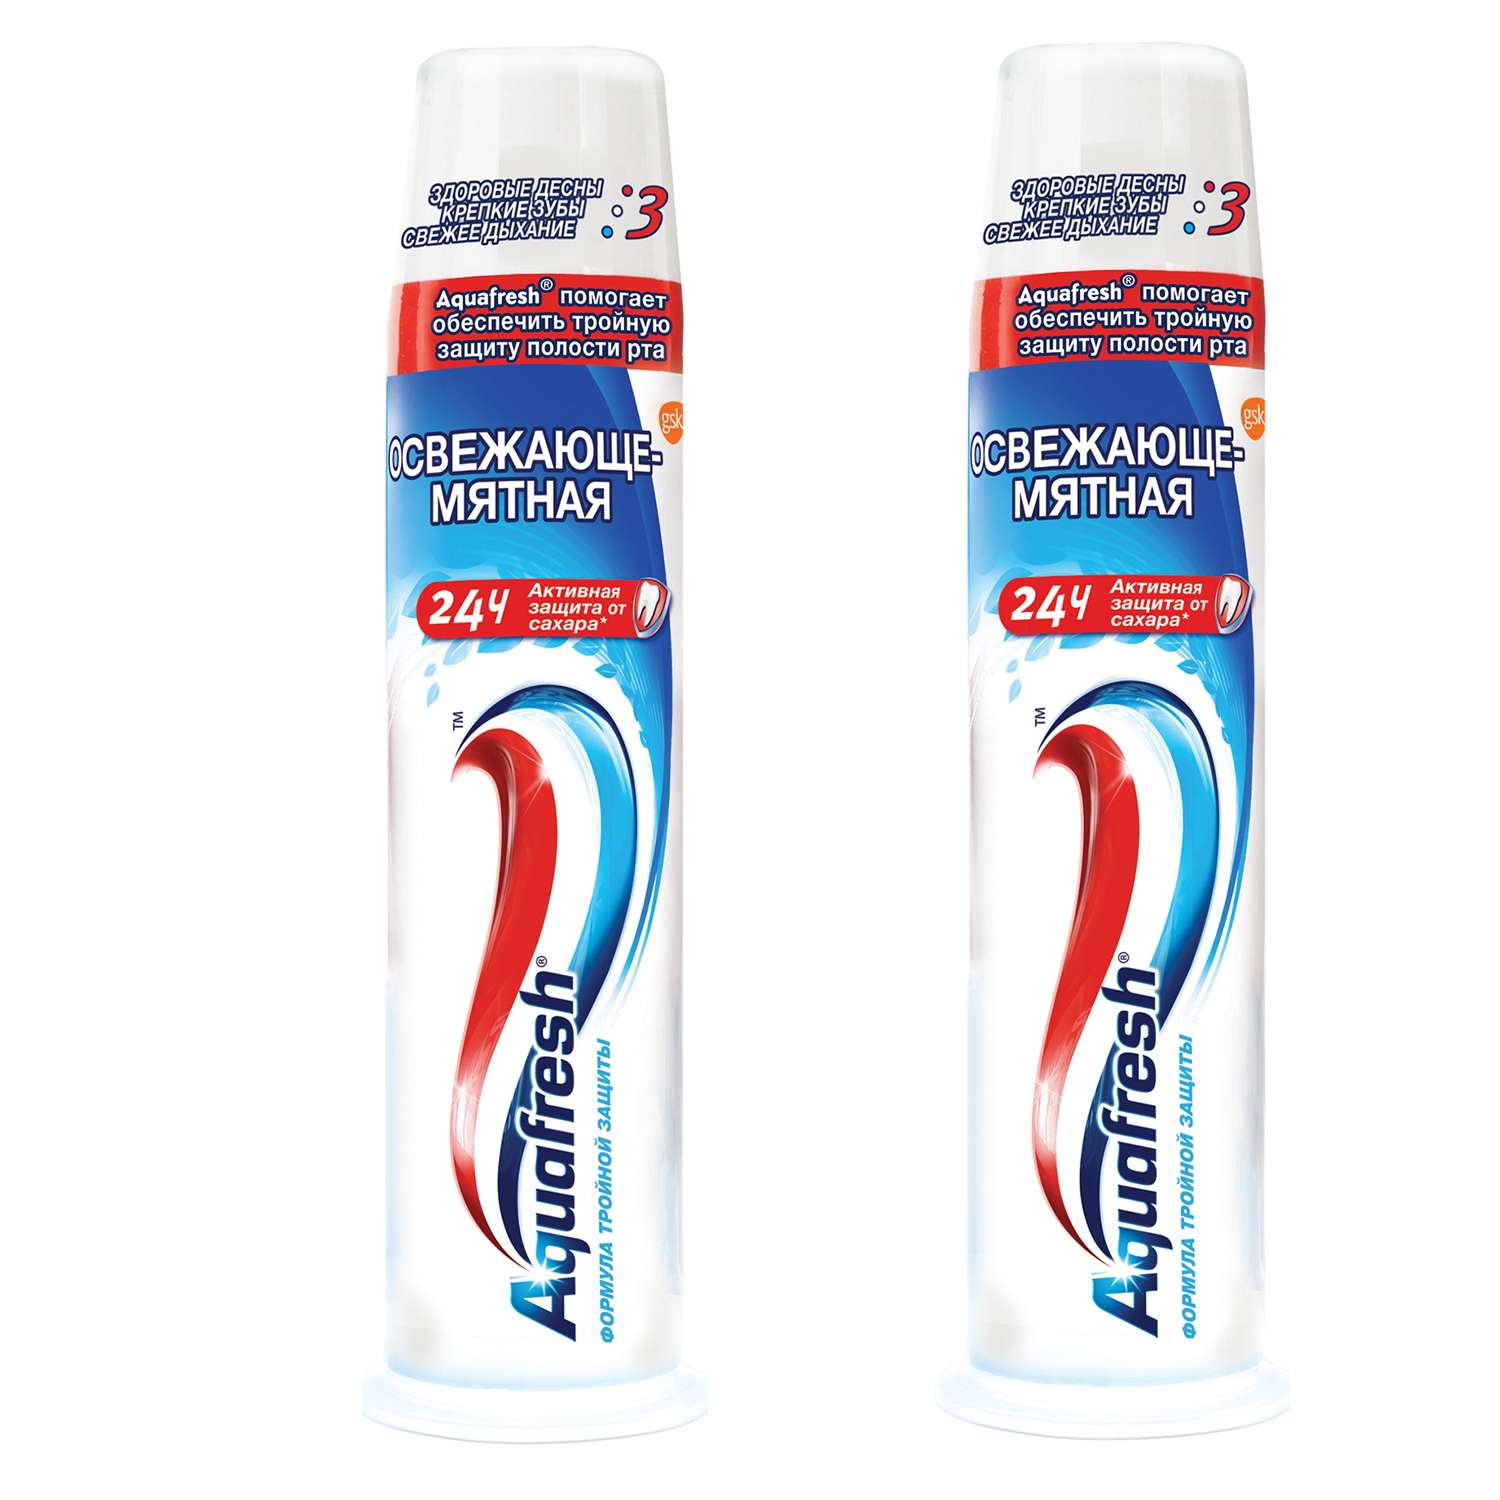 Зубная паста Aquafresh освежающая-мятная 3+ тюбик помпа 100 мл. 2 шт - фото 1